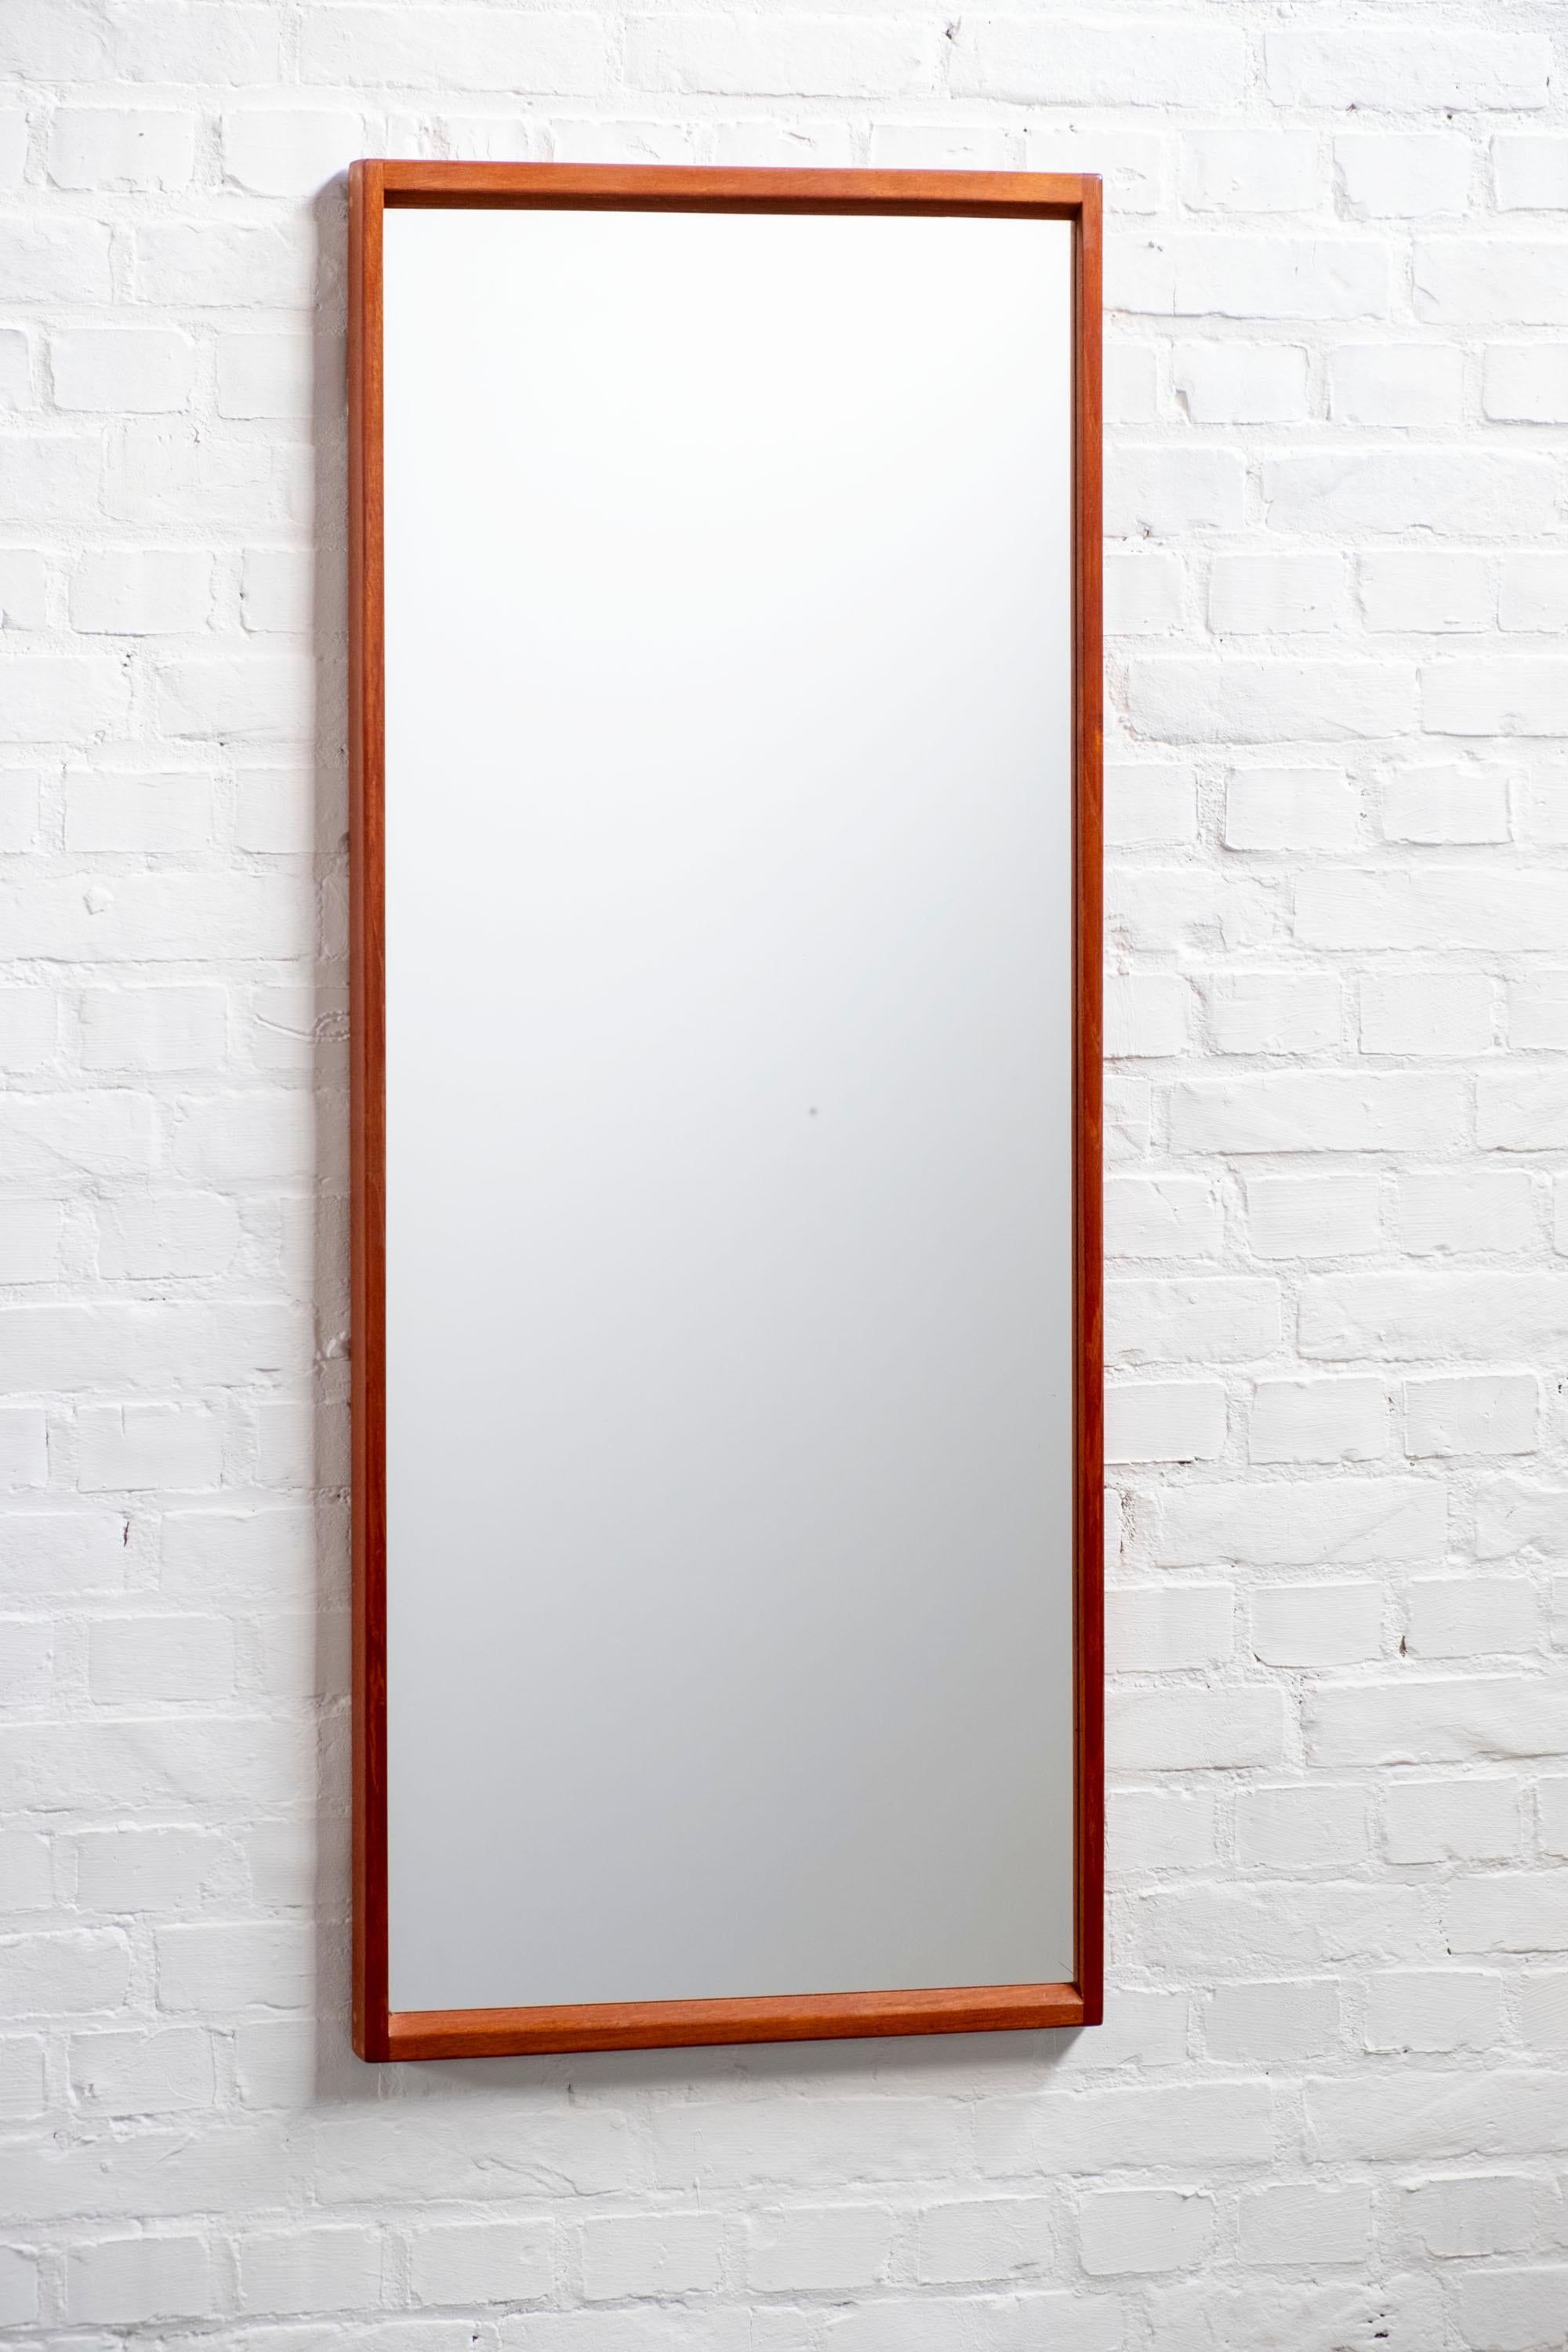 Joinery Kai Kristiansen Teak Mirror Model 14 for Aksel Kjersgaard, 1960s Denmark For Sale